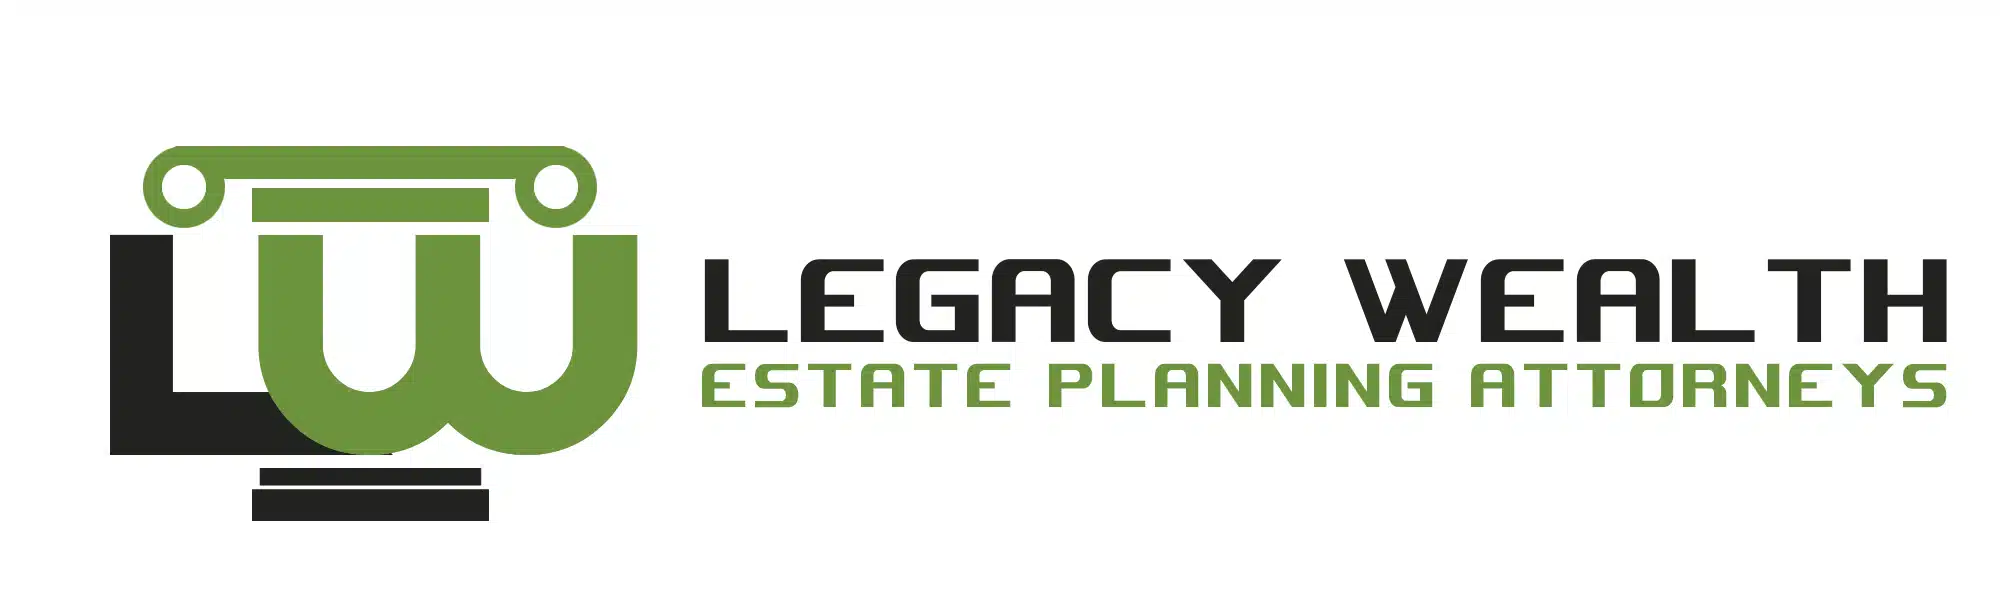 Legacy-Wealth-7.webp